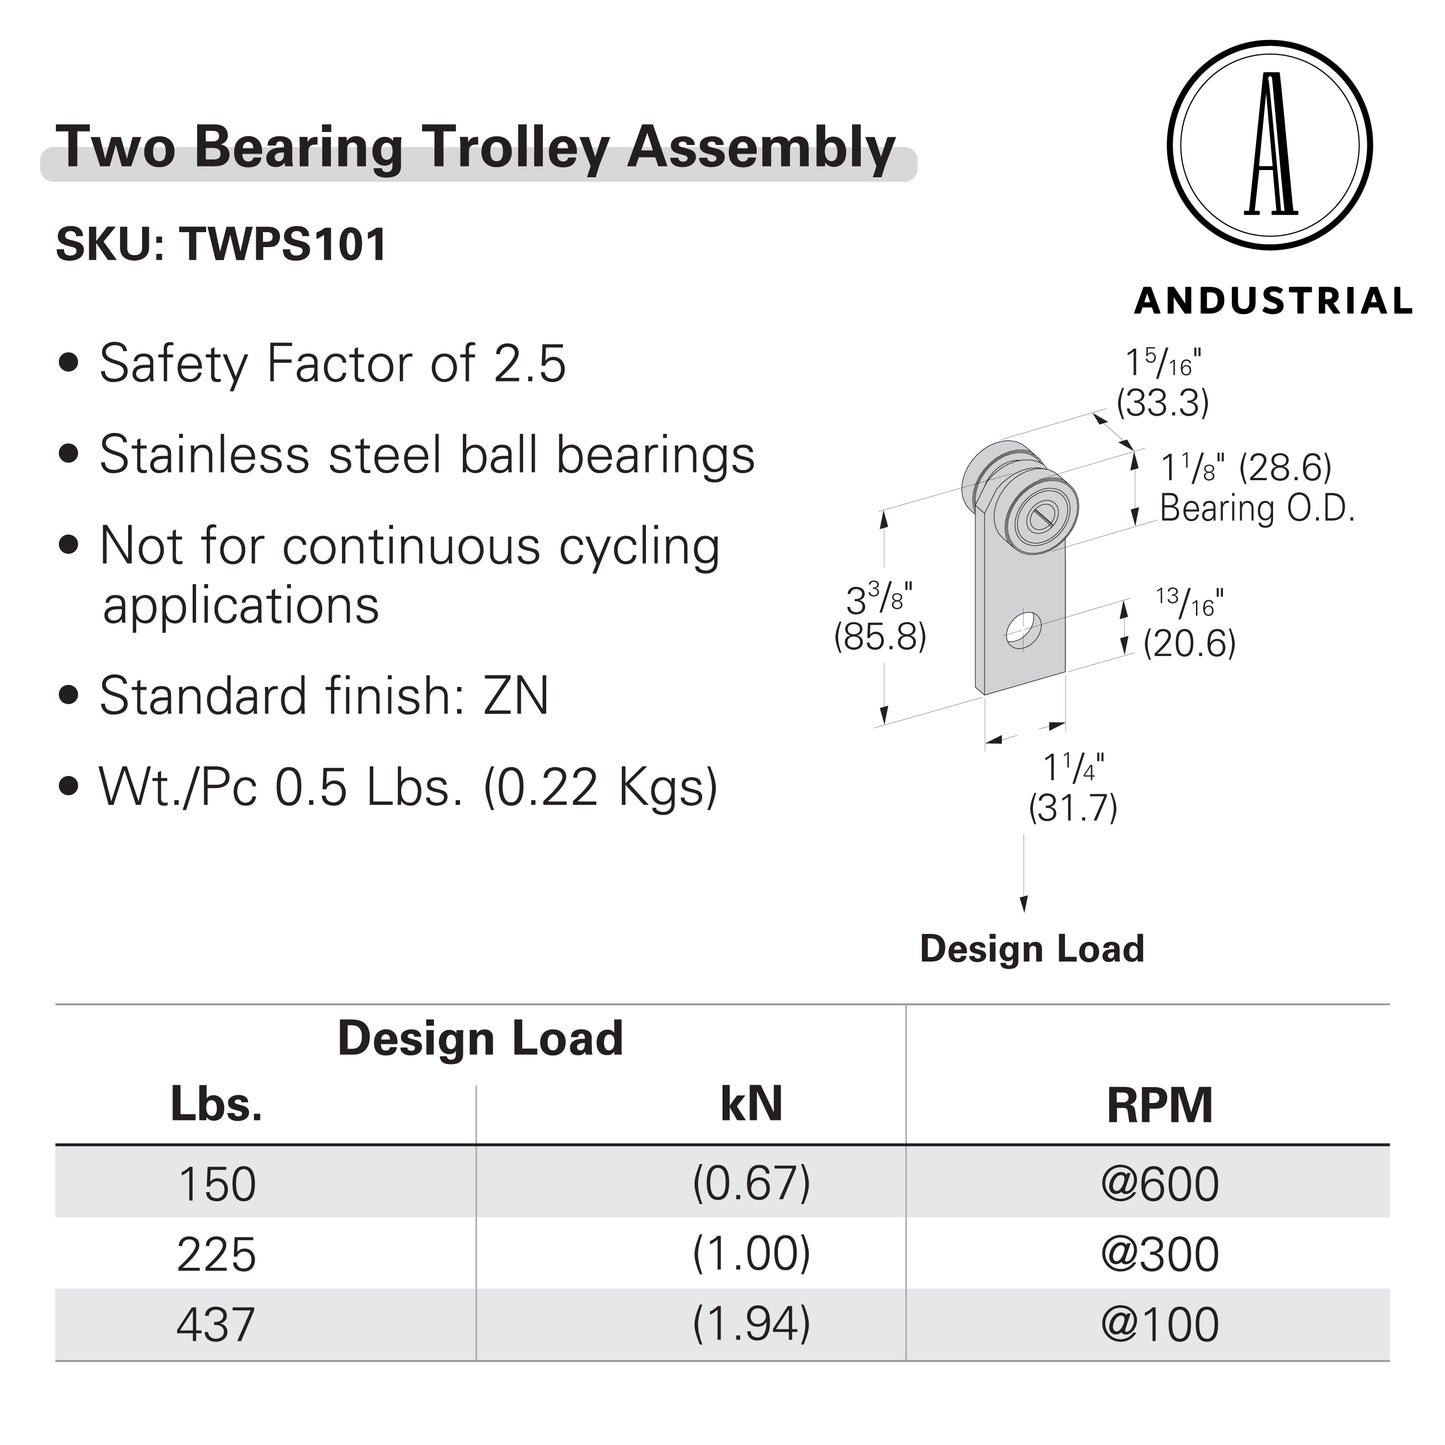 Bearing Trolley Assemblies